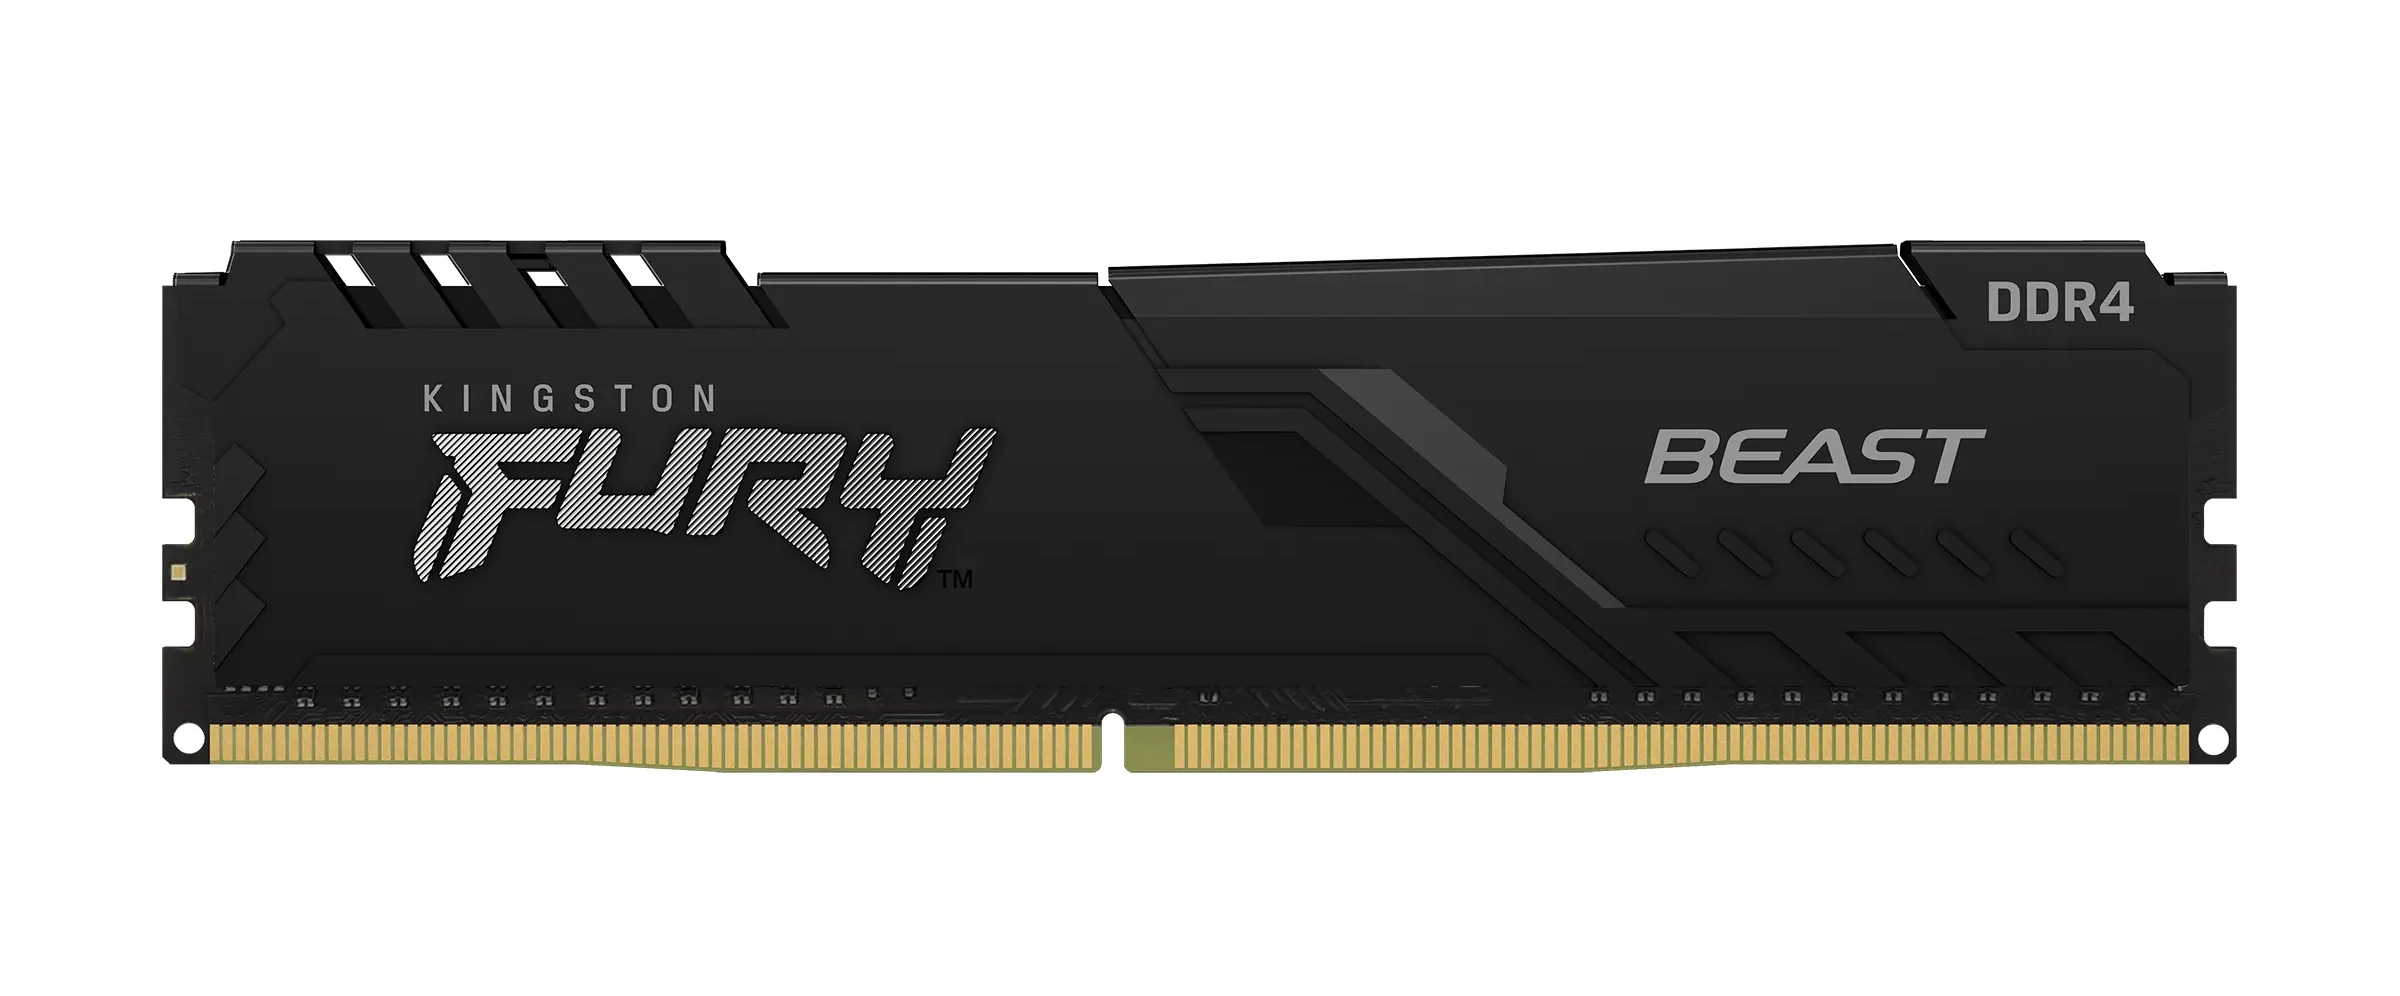 Kingston FURY cập nhật bộ nhớ Renegade DDR4: Tốc độ lên đến 5333MT/s, hiệu suất tốt hơn